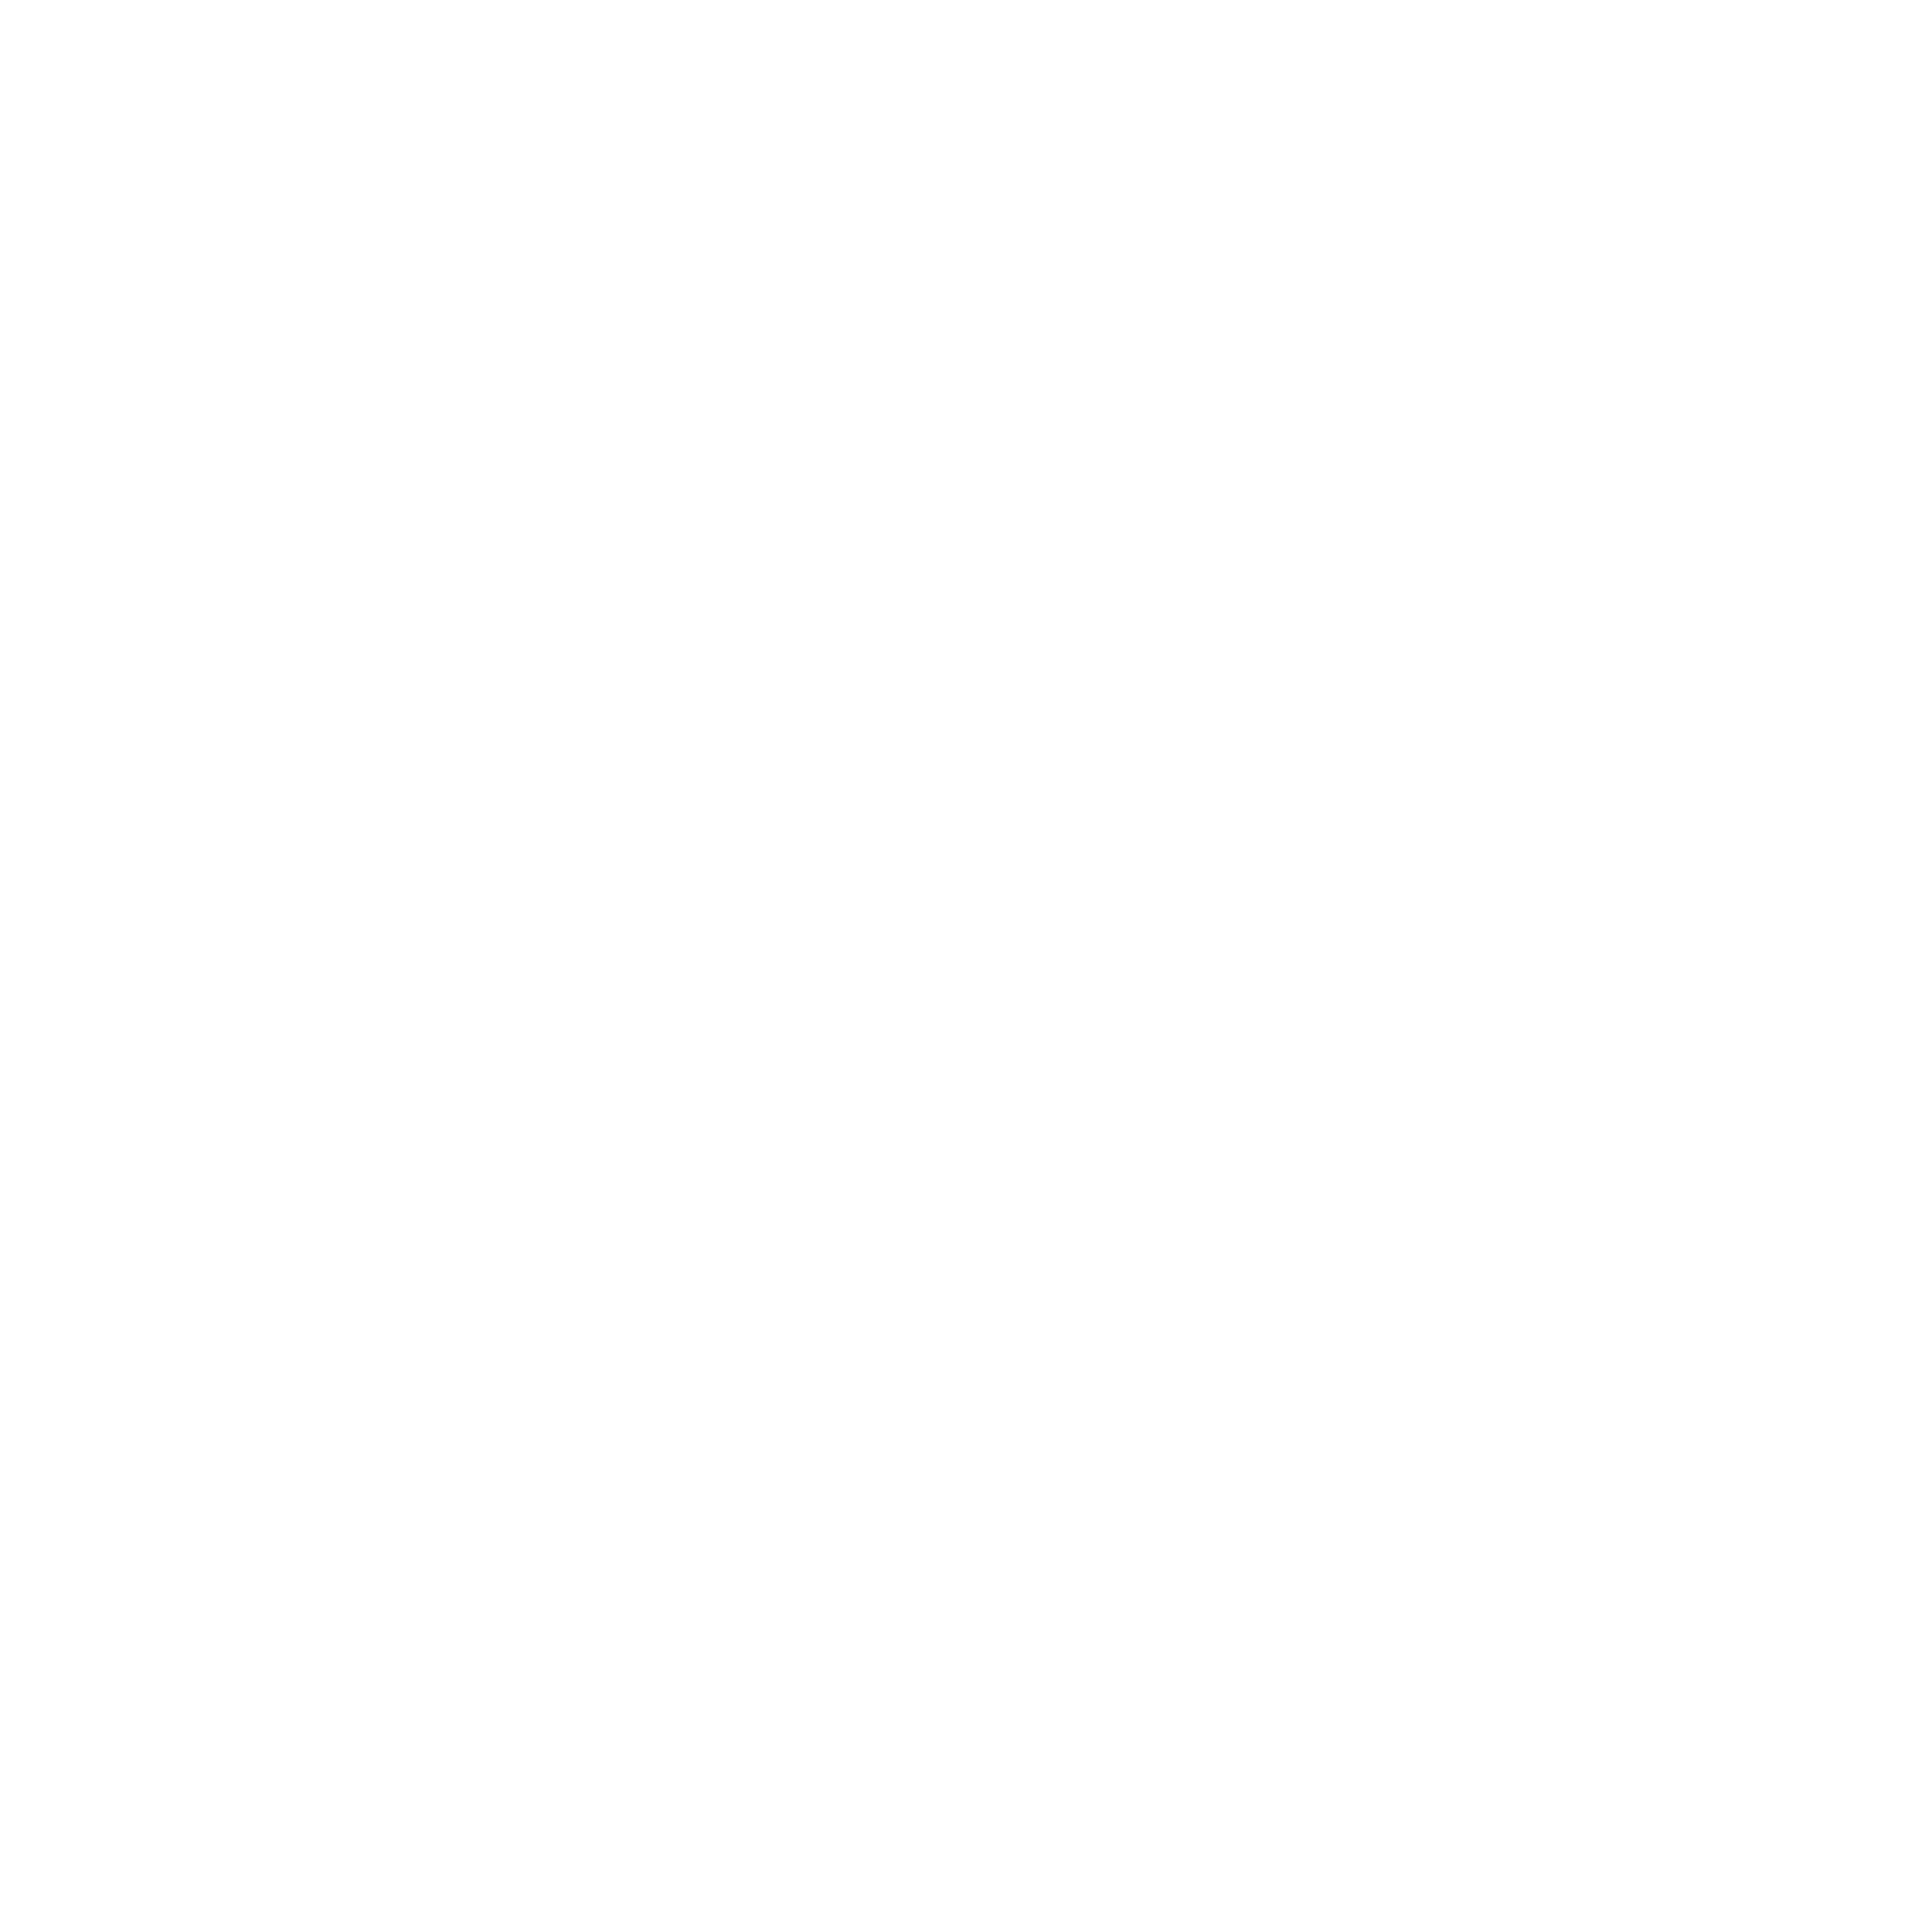 Kanaho